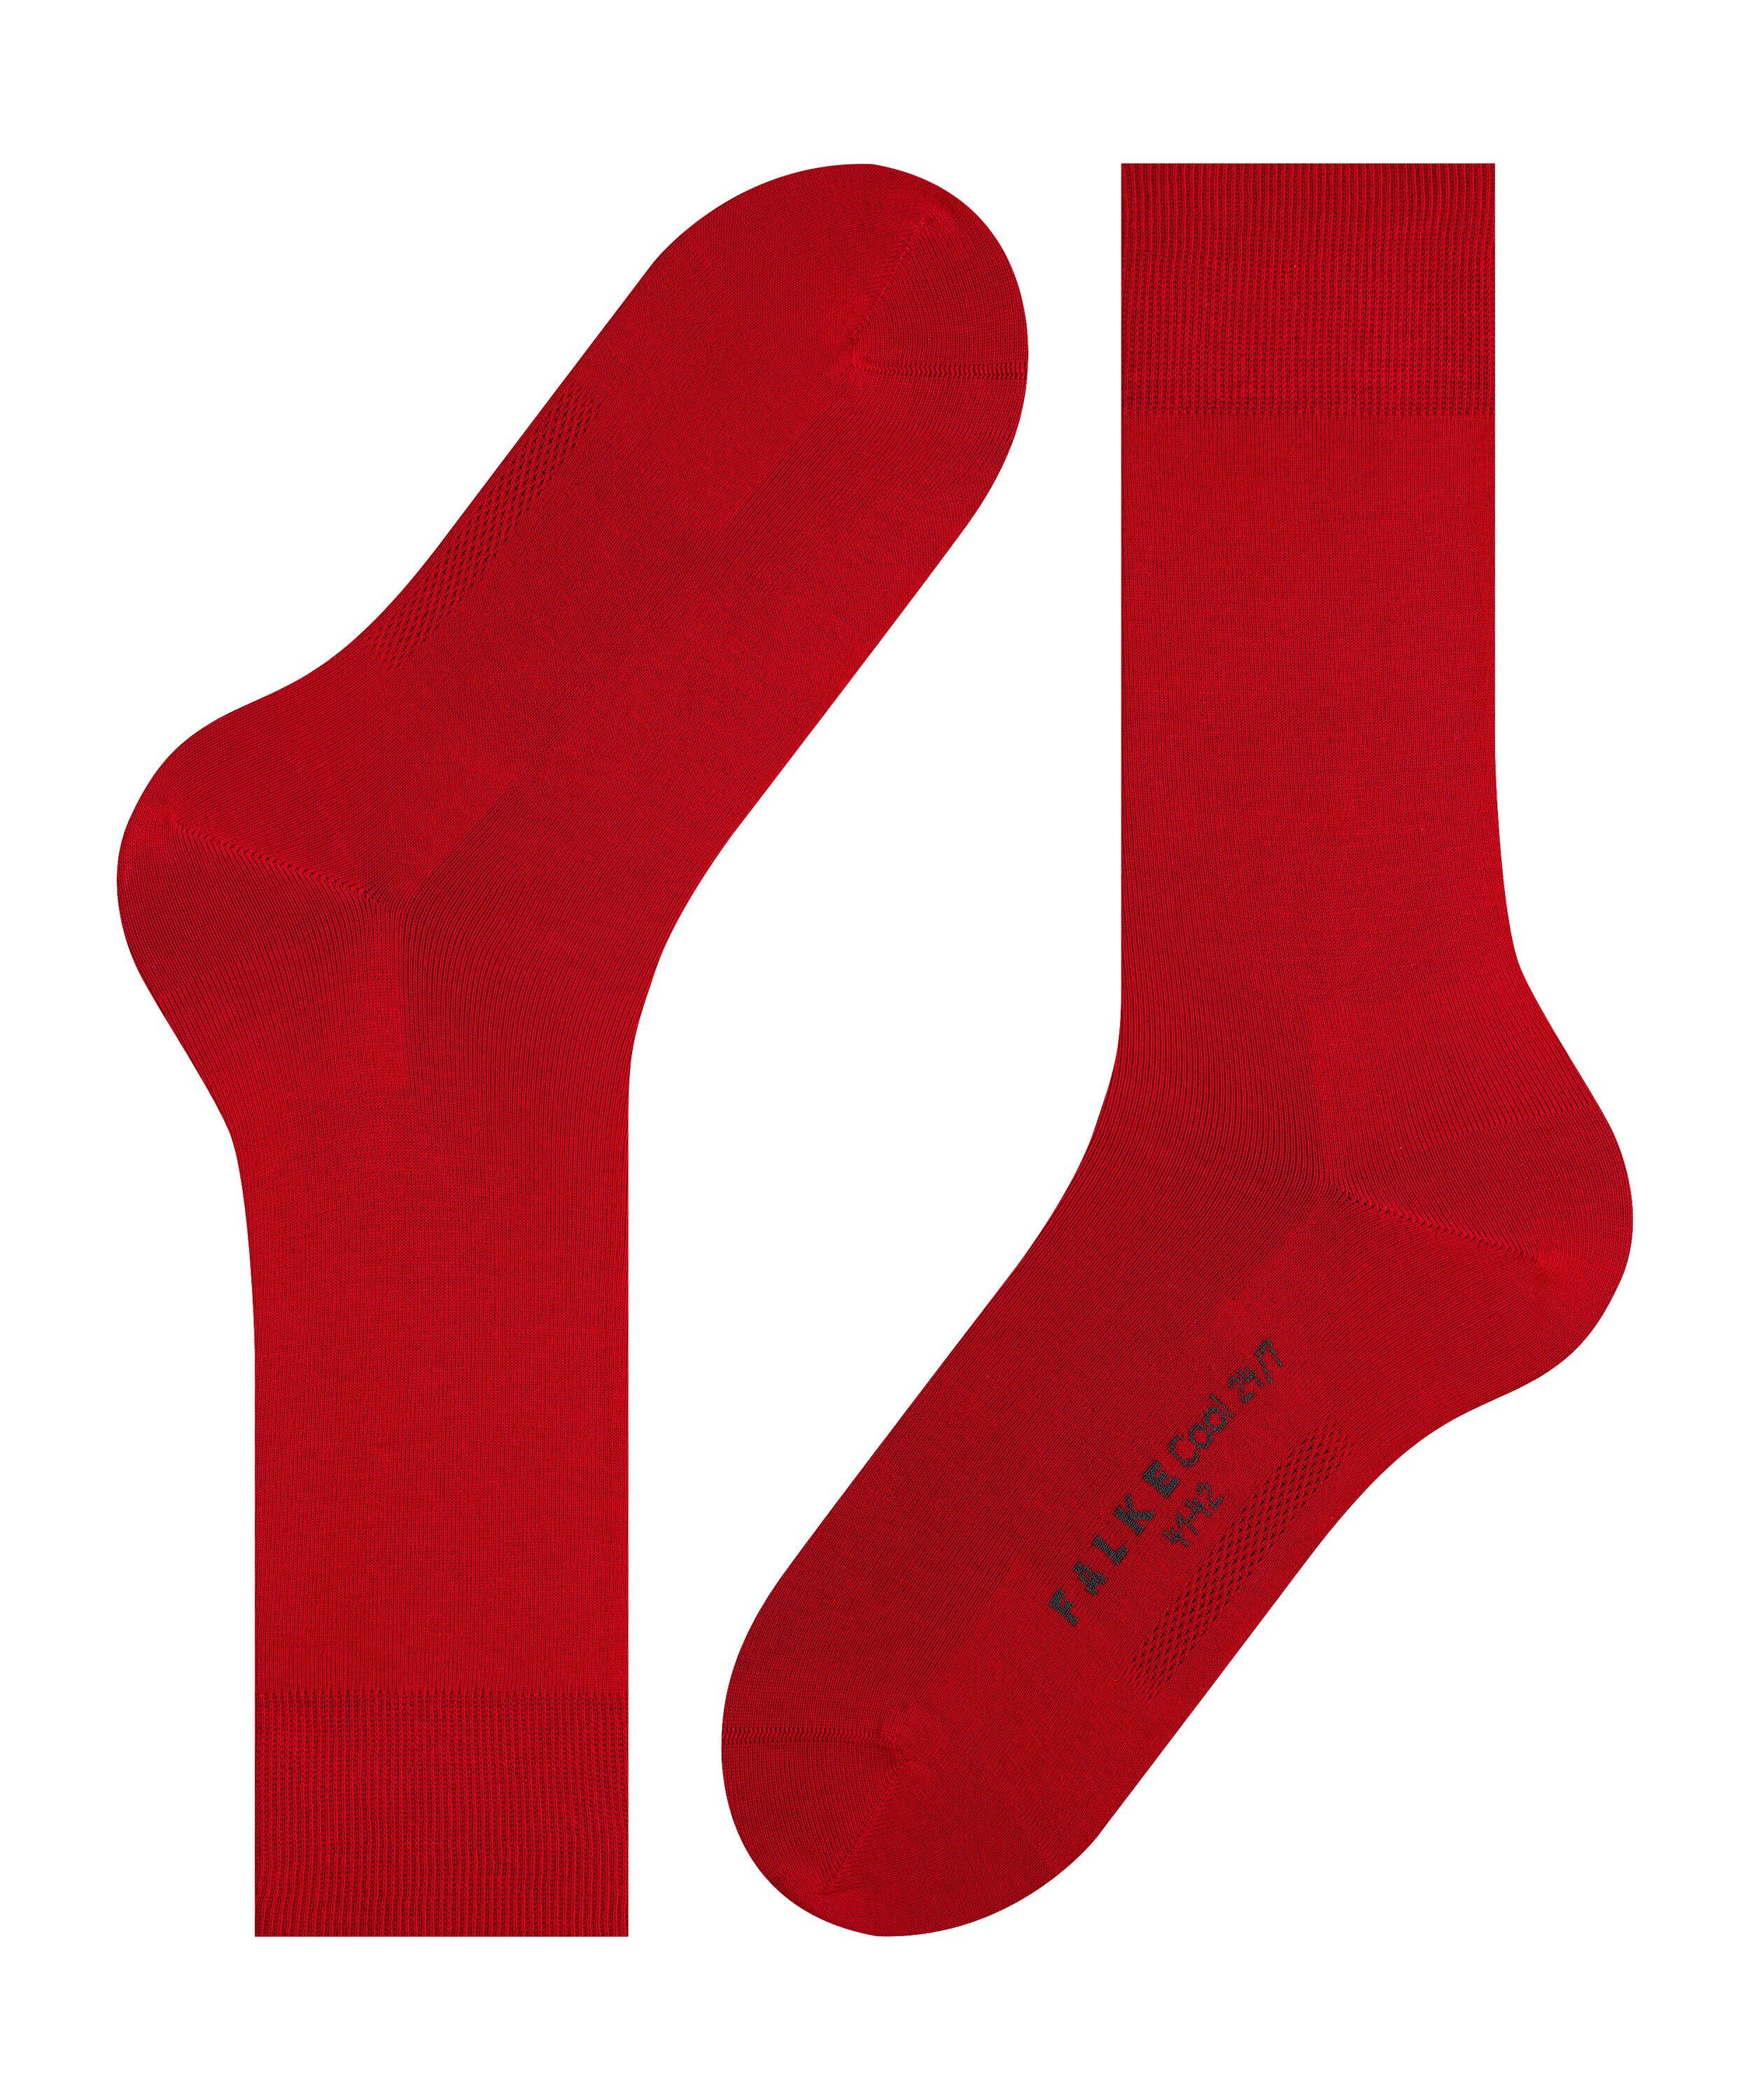 FALKE (8228) 24/7 (1-Paar) Cool scarlet Socken